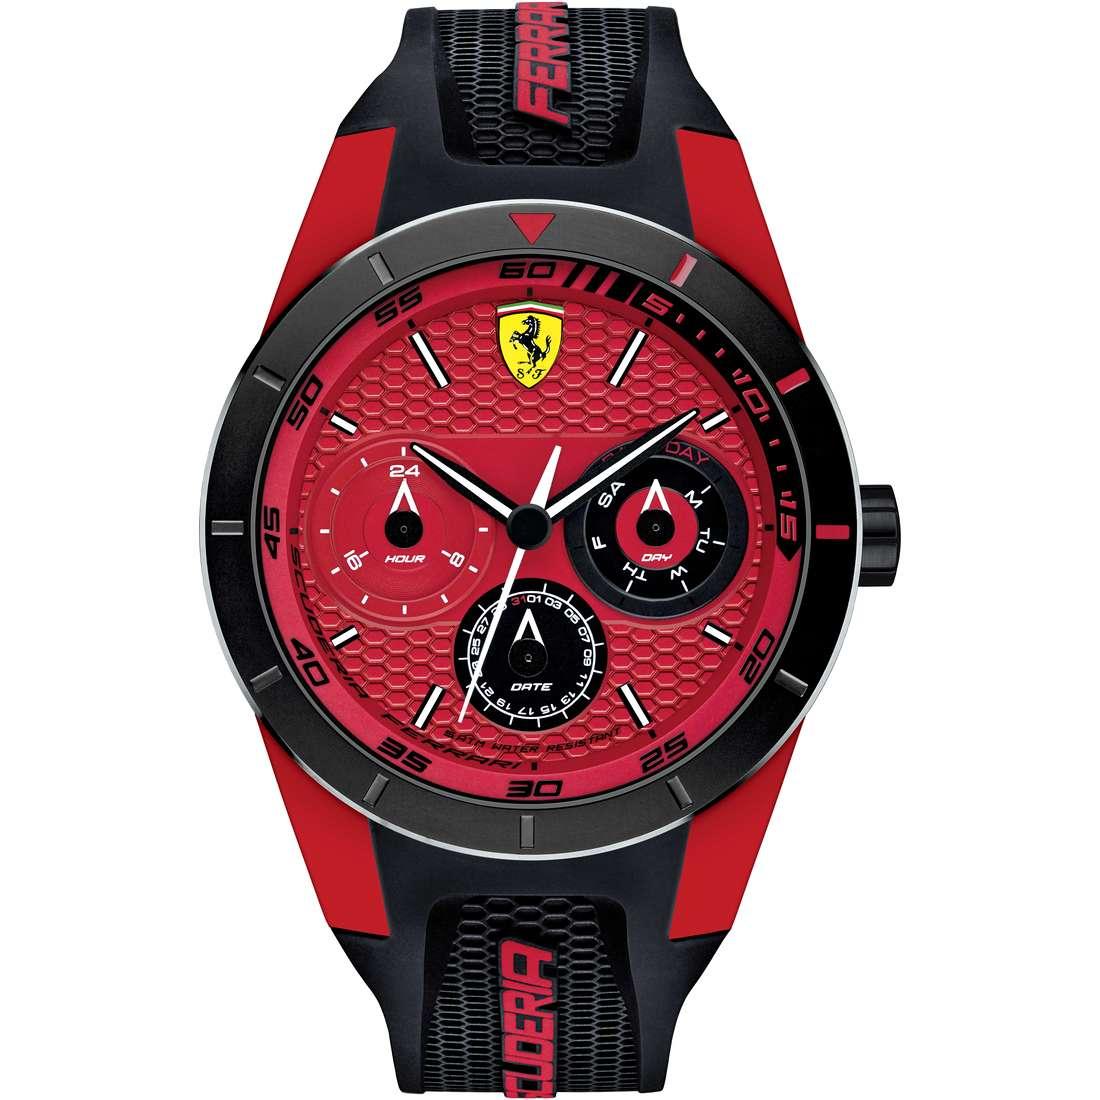 Ferrari часов. Часы Scuderia Ferrari Red Rev. Ferrari Scuderia Ferrari Red часы мужские. Часы Ferrari Scuderia оригинал. Наручные часы Ferrari 830172.